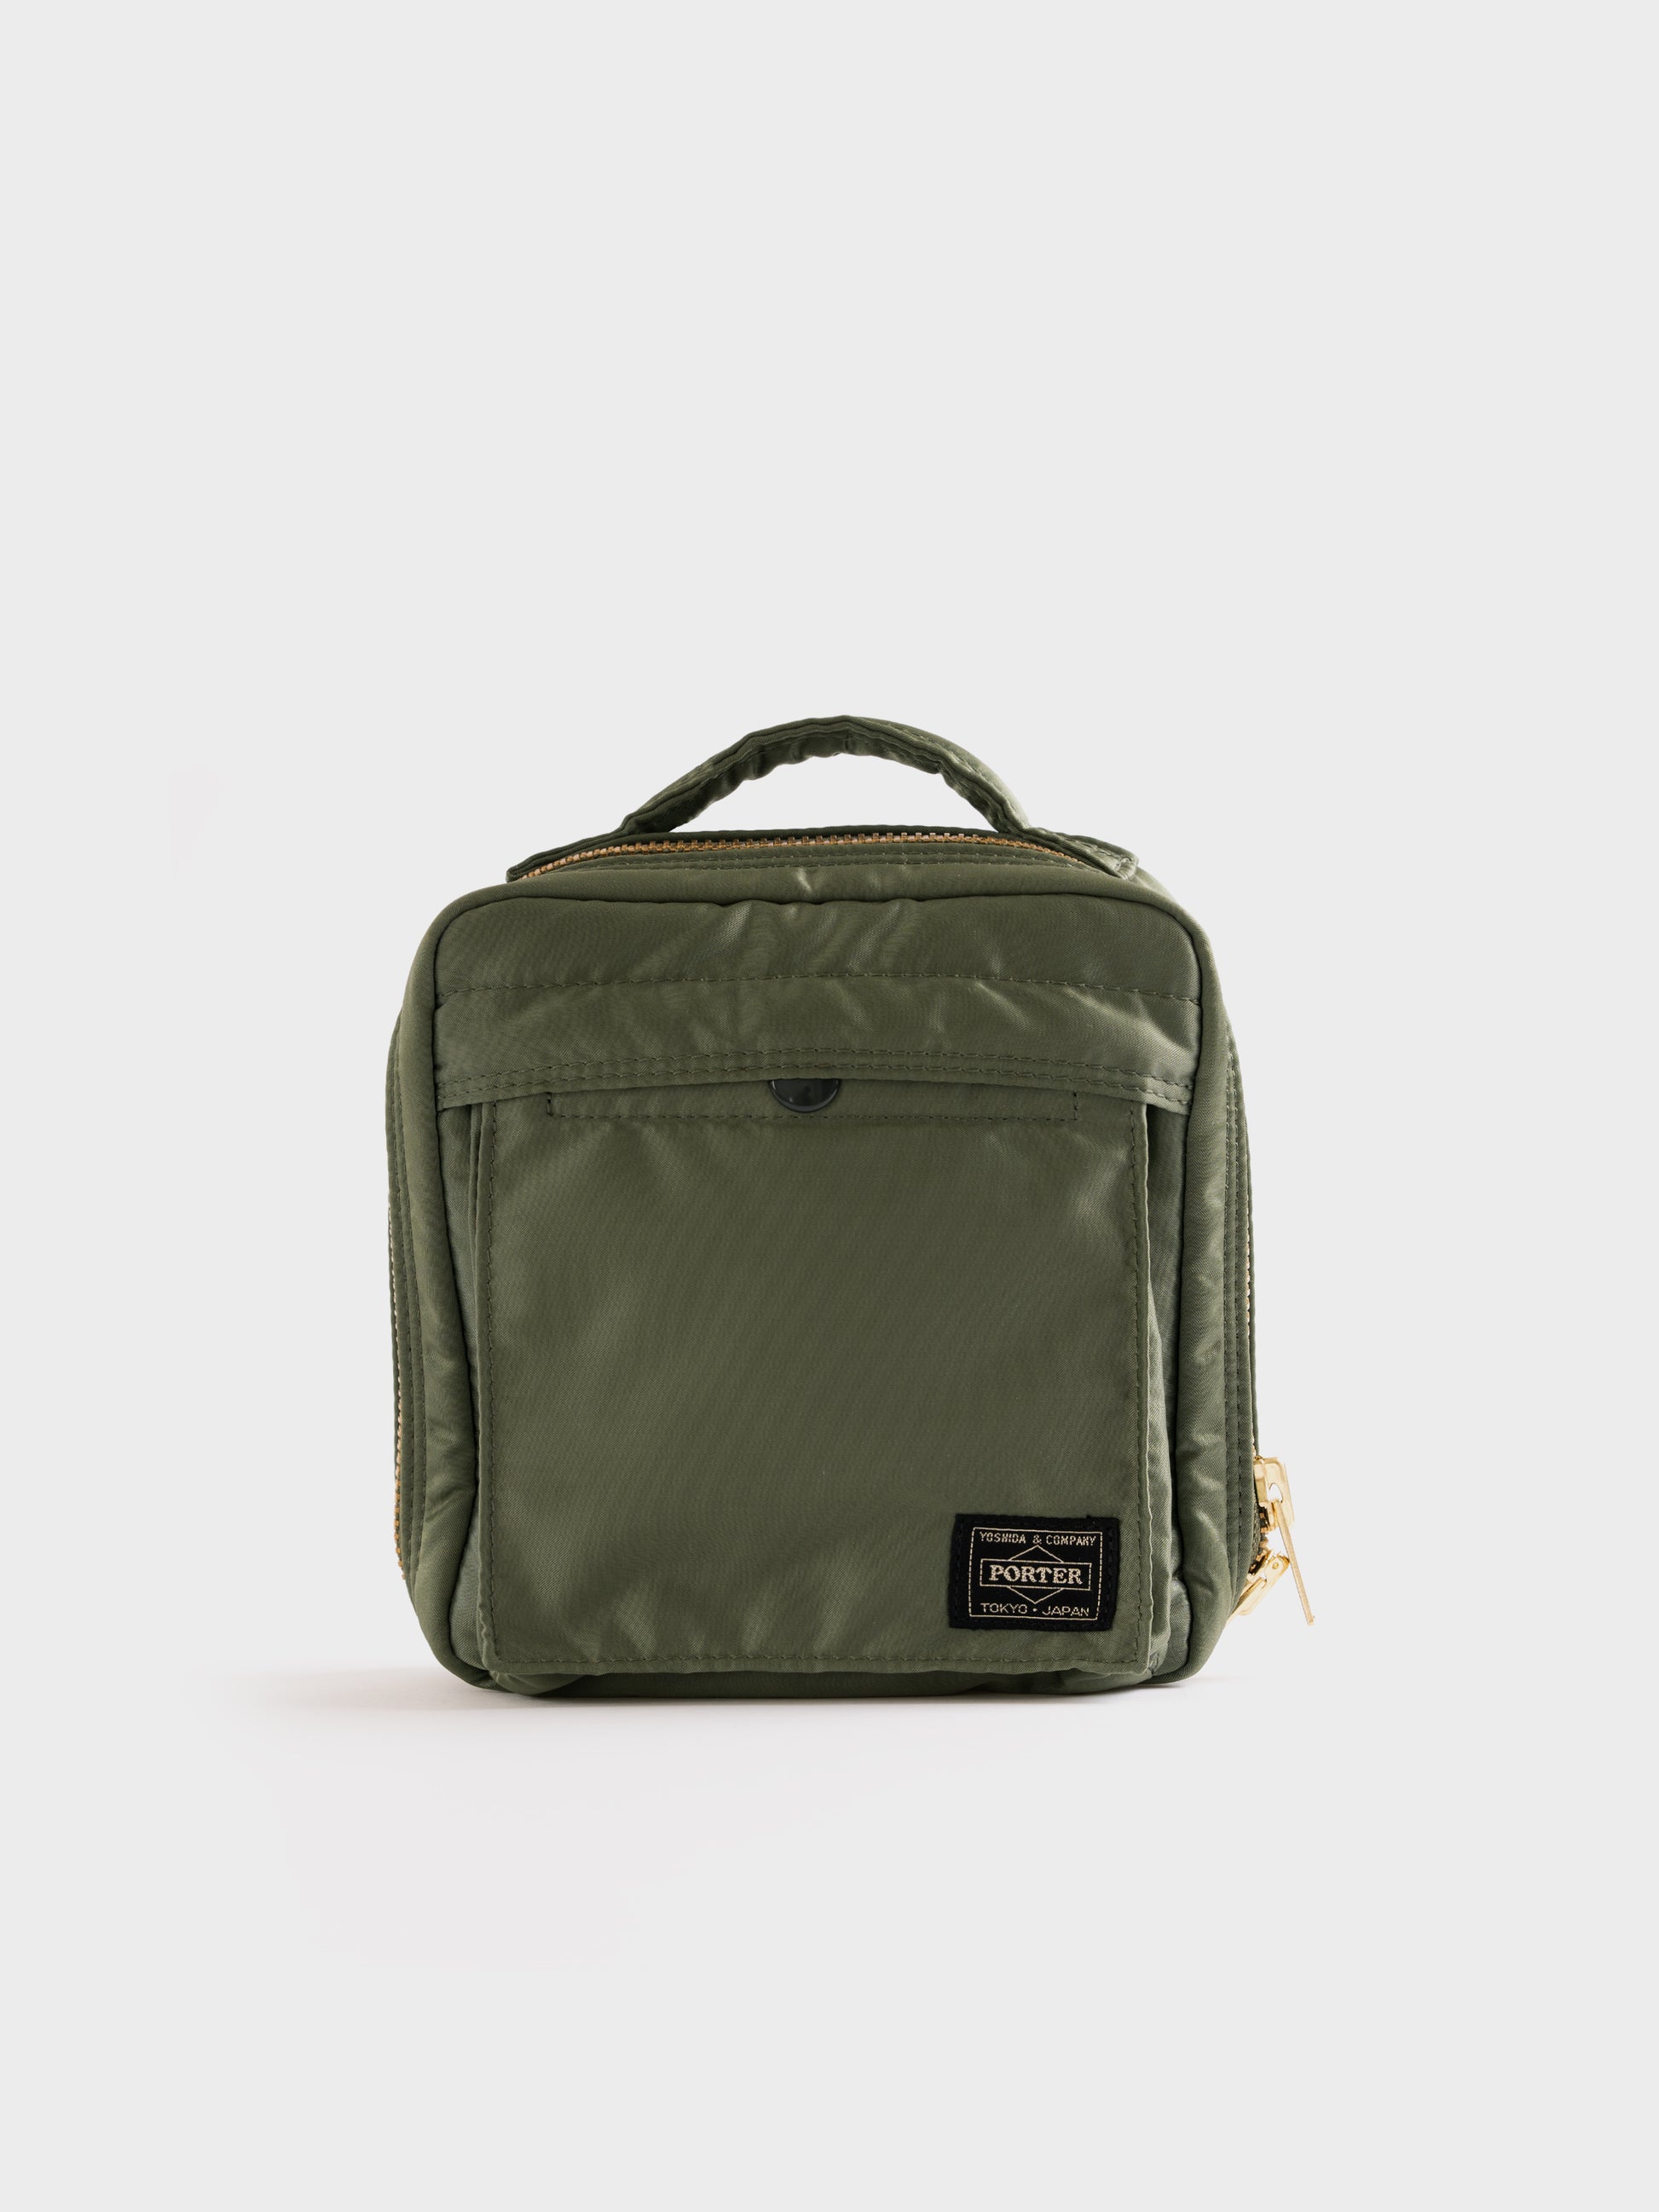 Porter-Yoshida & Co Tanker Square Shoulder Bag - Sage Green